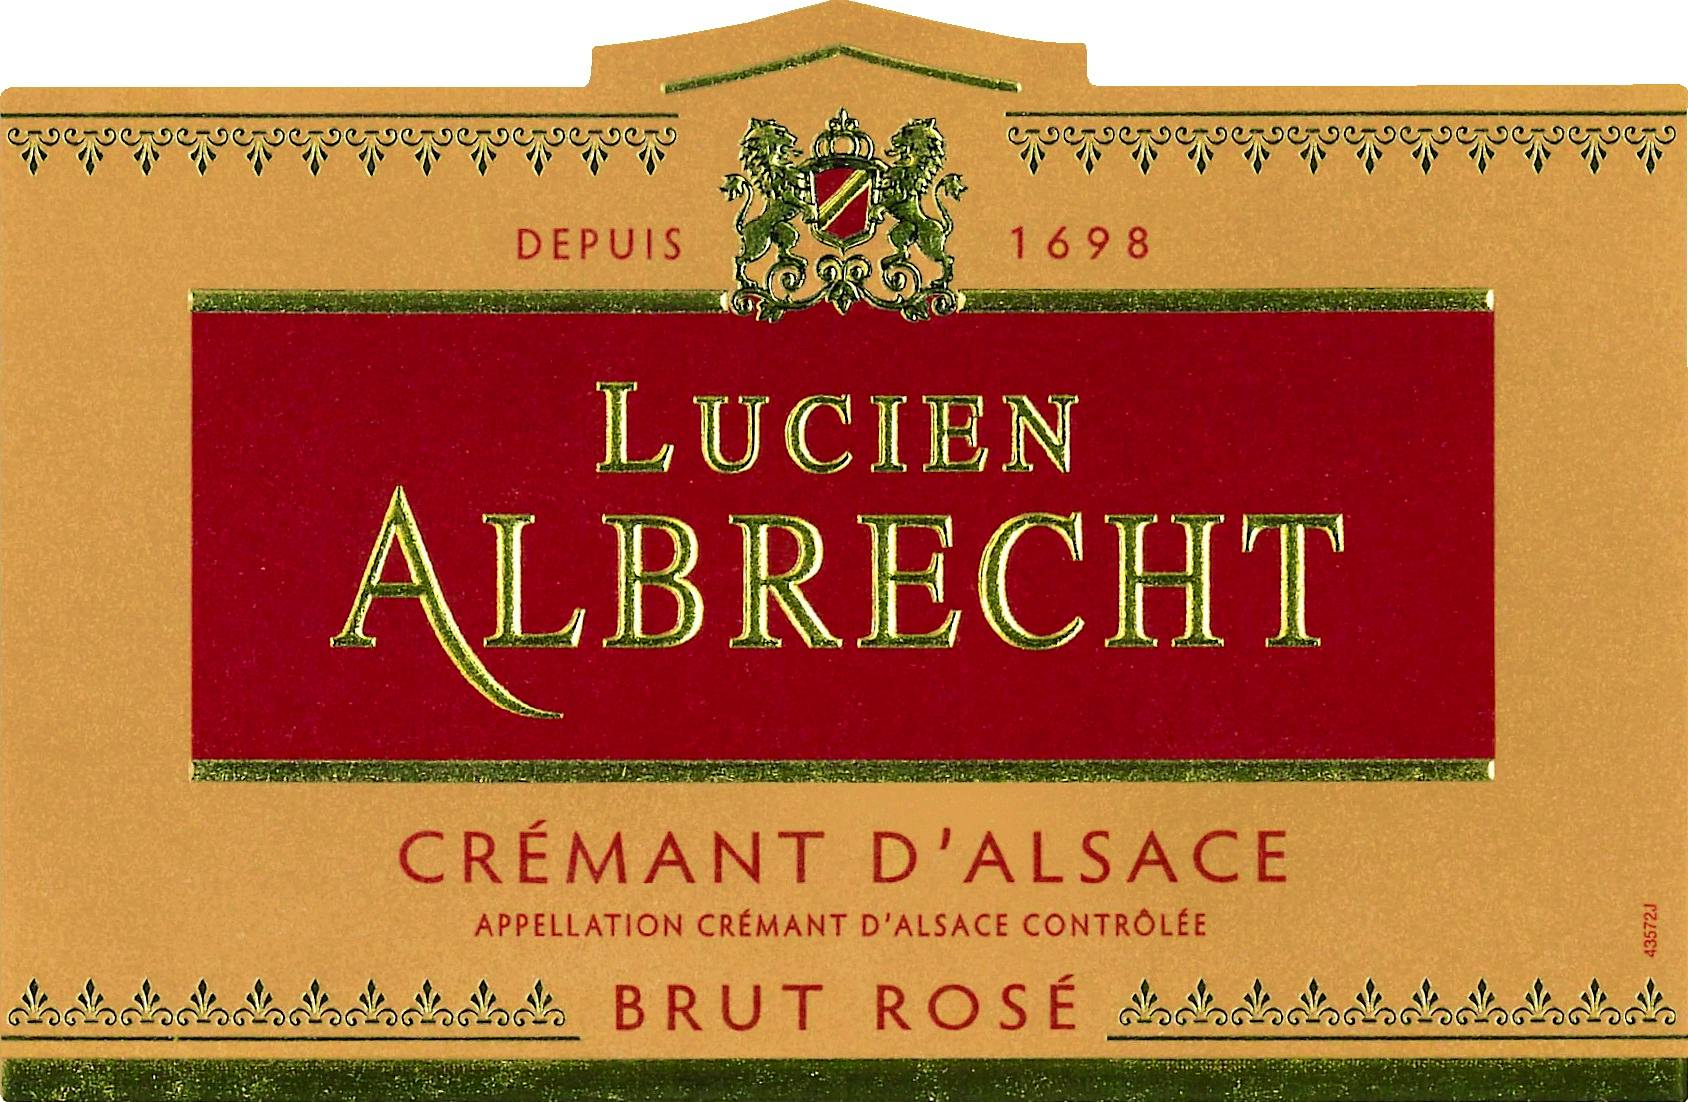 Label for Lucien Albrecht